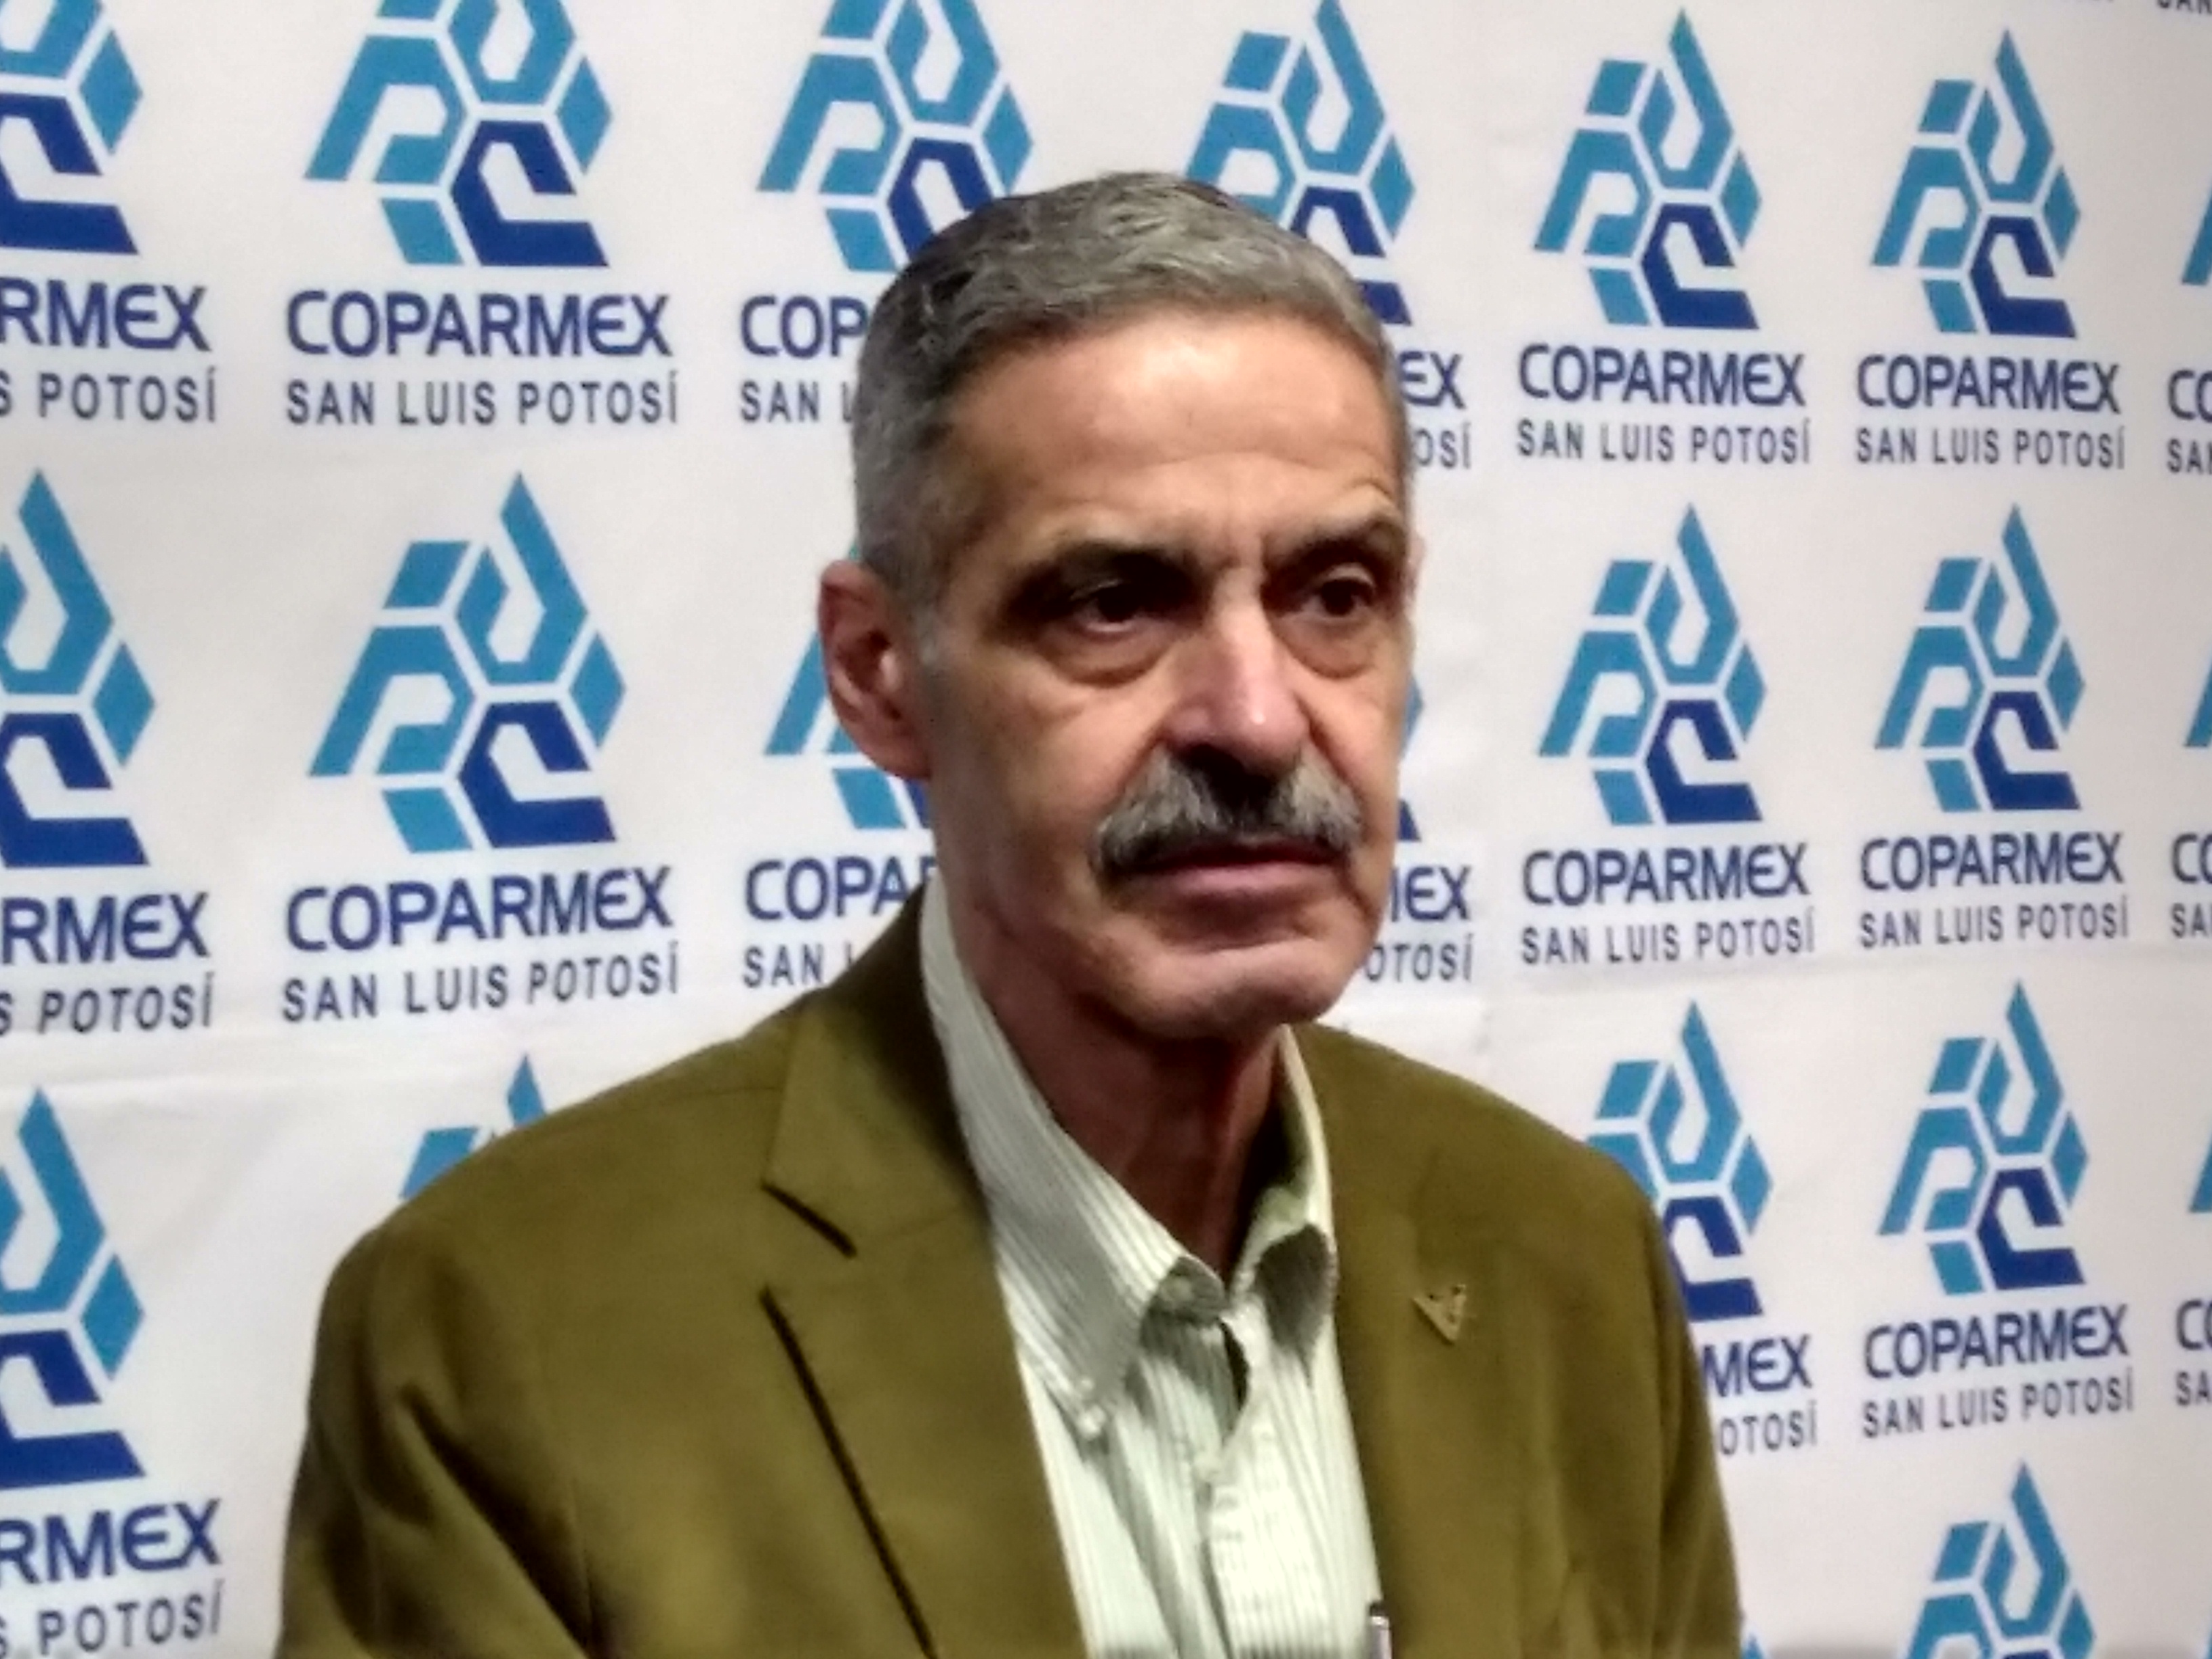  Investigar a fondo y sancionar corrupción en ASE y Congreso: Coparmex